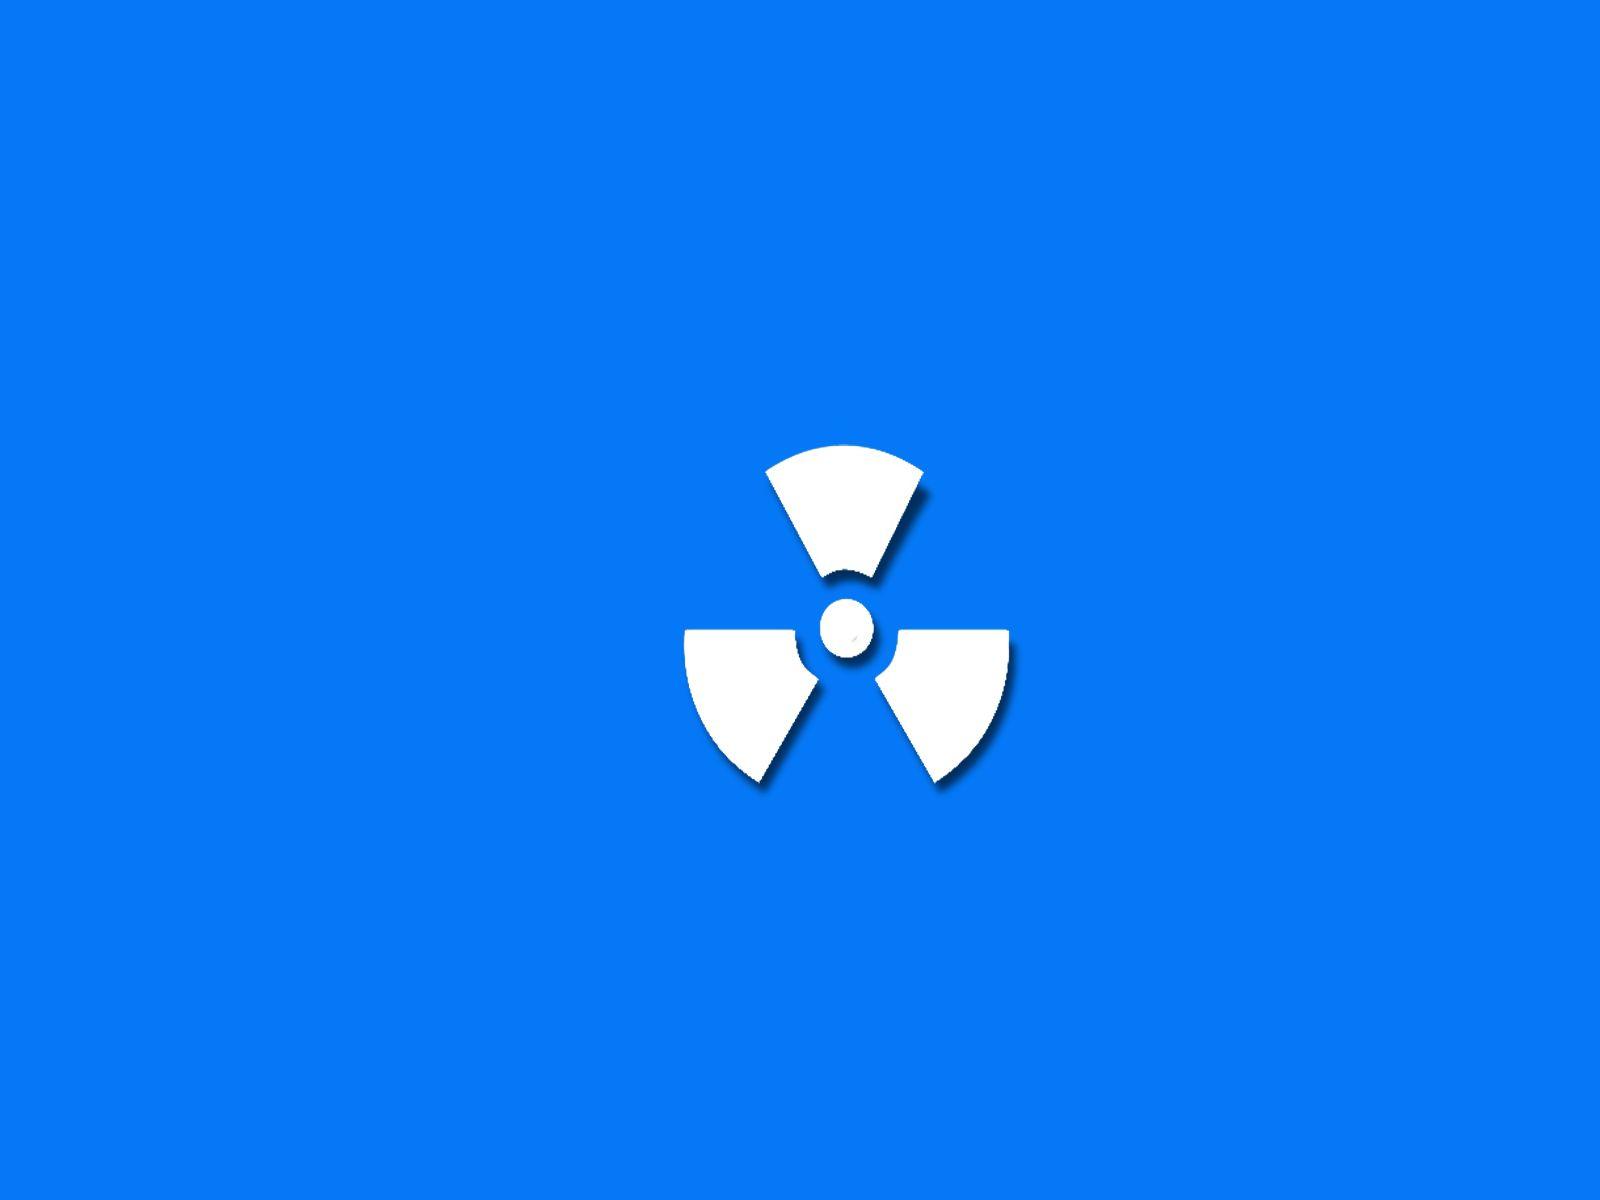 Radiation Hazard Symbol HD Wallpaper